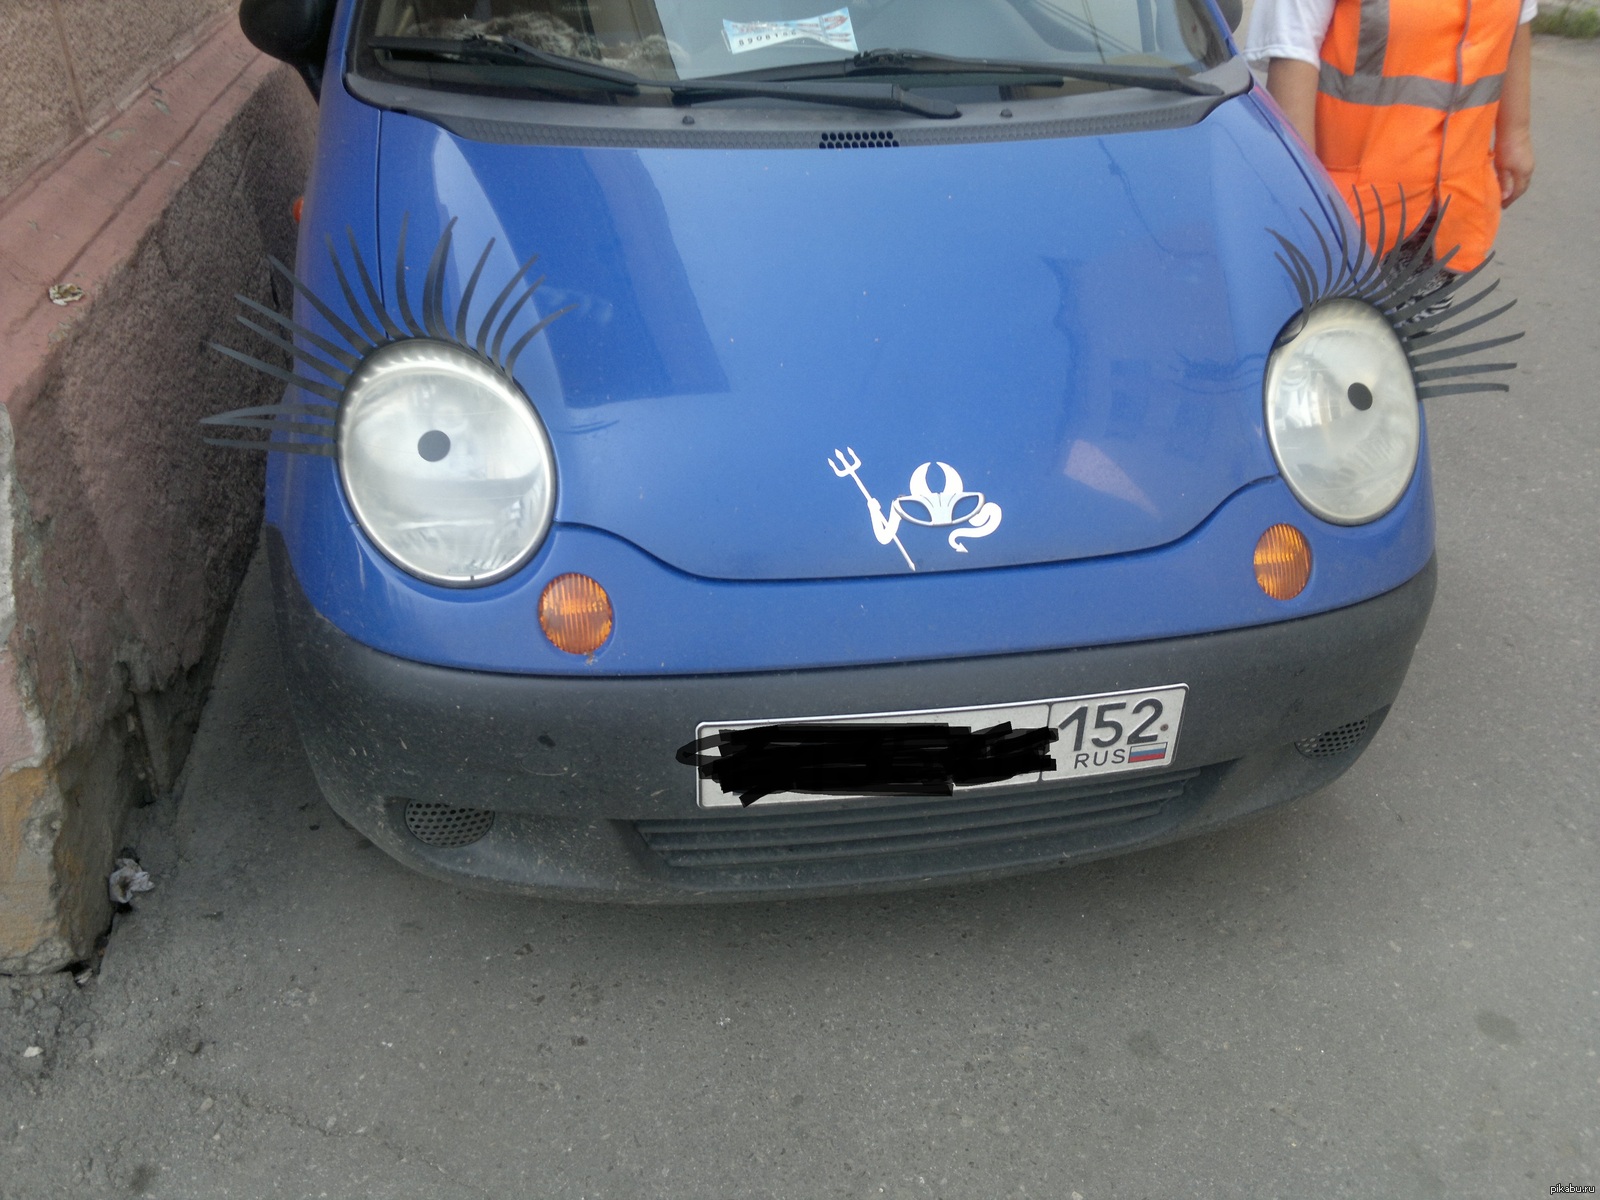 Глазки авто. Автомобиль с глазами. Машина с глазками. Машинки с глазами. Глаза на авто.